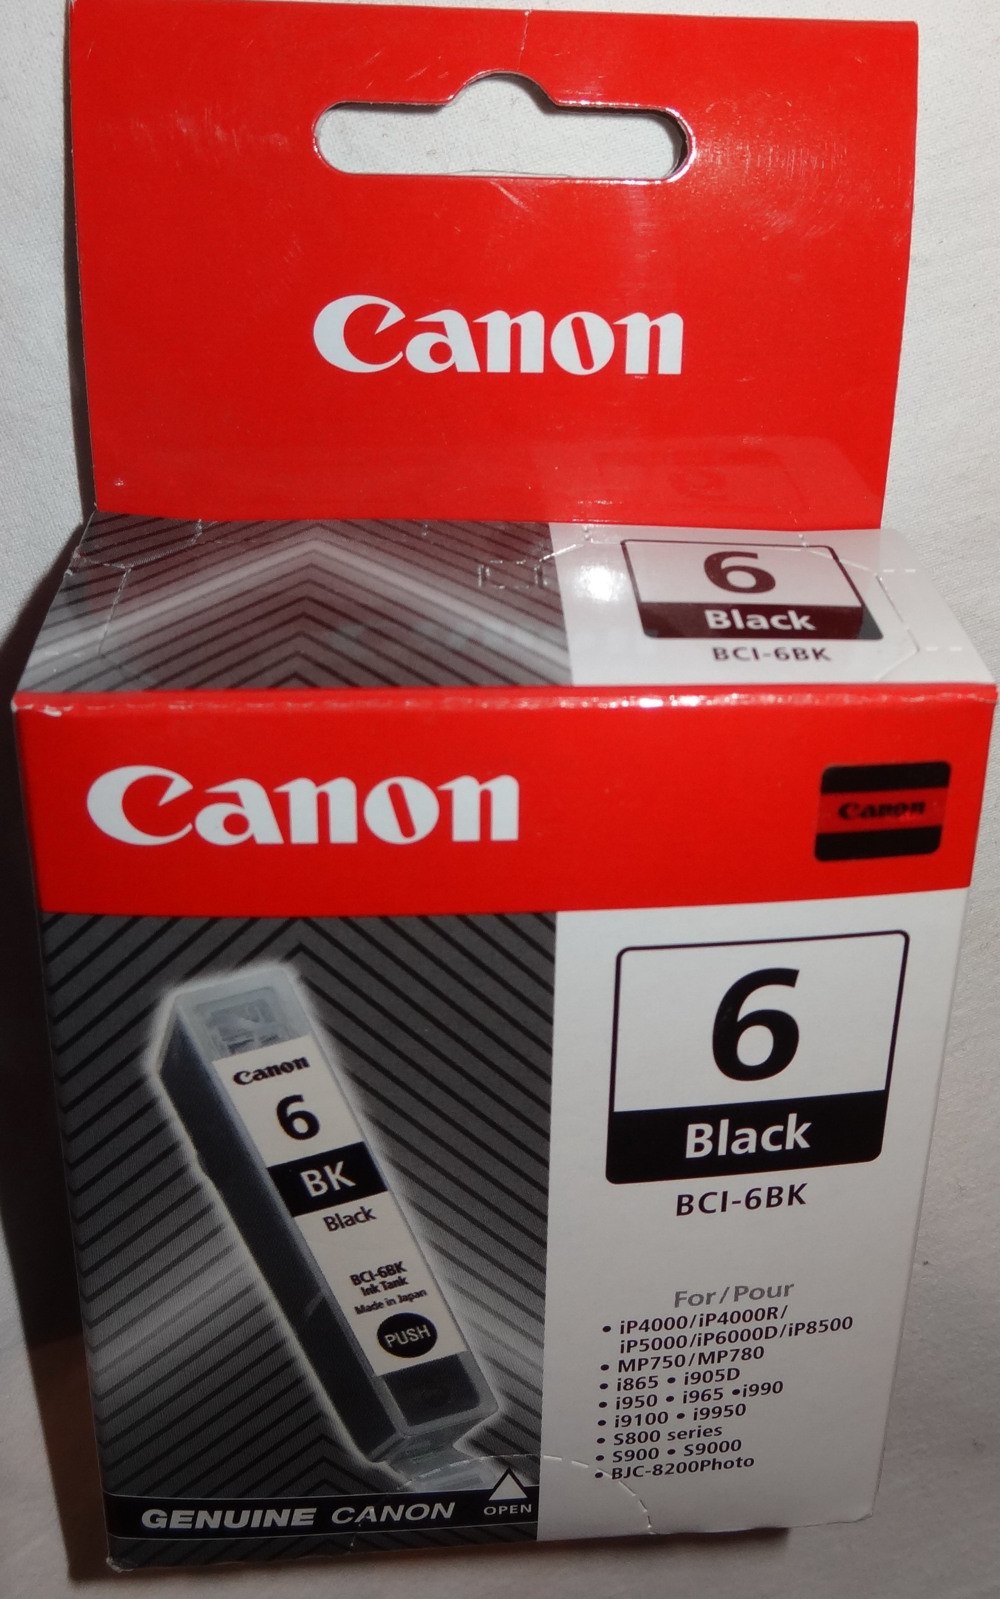 S Canon 6 BCI-6BK Originalpatrone schwarz Tintenpatrone 13ml Druckerpatrone unbenutzt   Auch unsere 